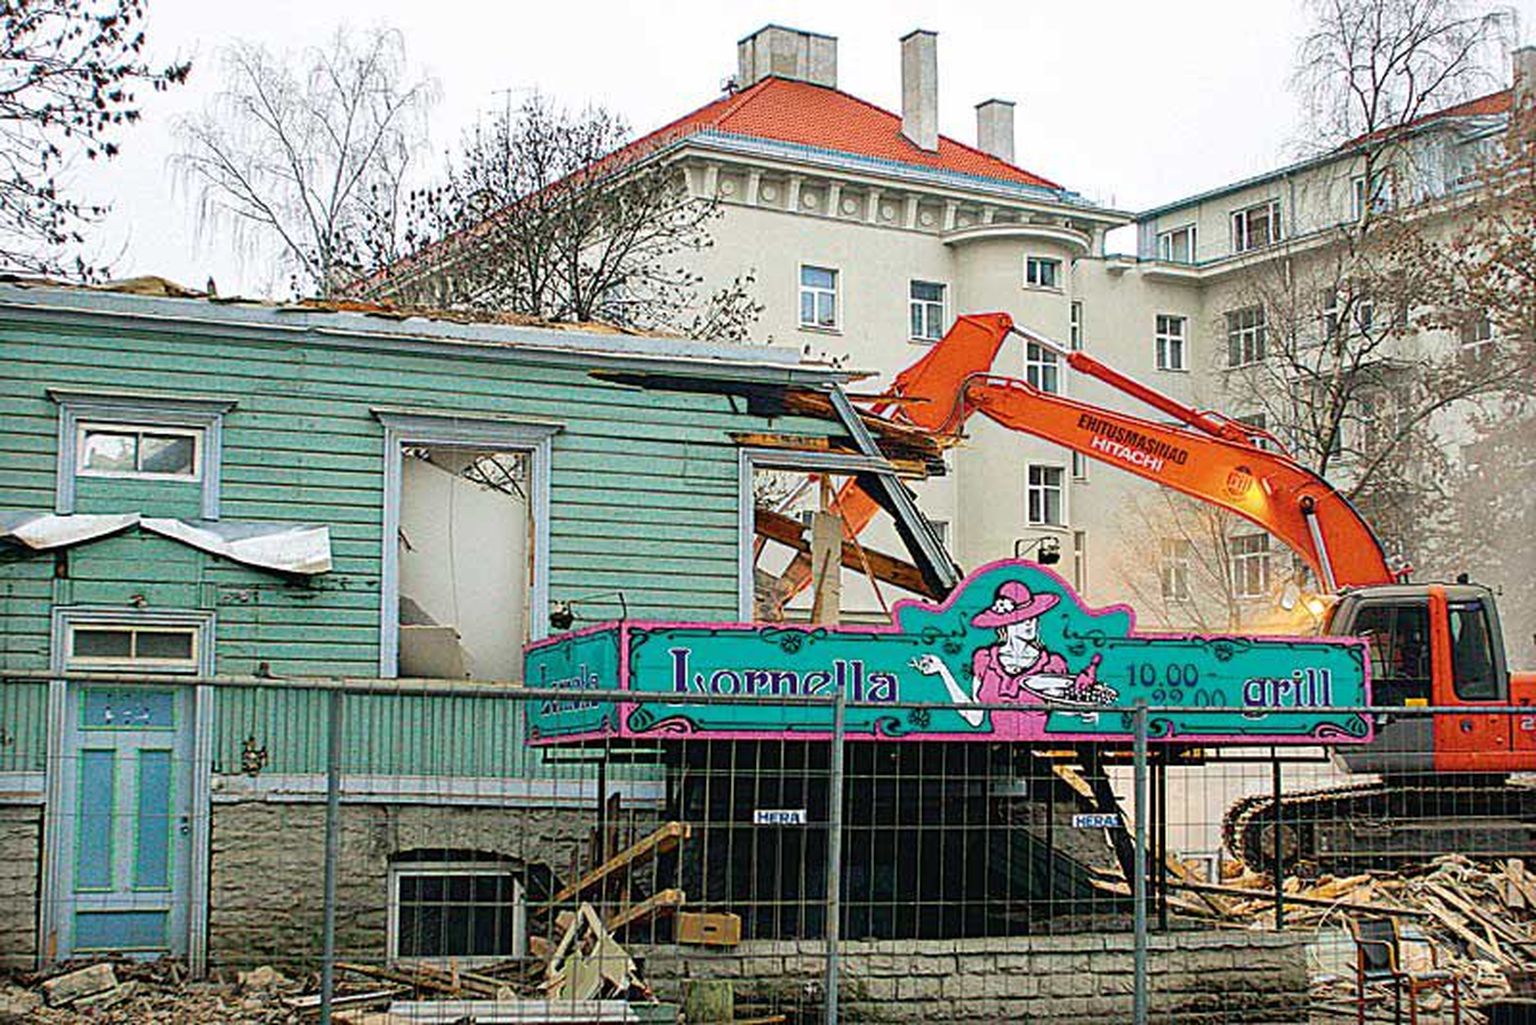 Hotelli ehitamiseks lasi AS Eesti Ehitus eelmisel nädalal maha lammutada välisministeeriumi juures Lembitu tänava alguses oleva kahekorruselise puitmaja, mille fassaadil püü­dis aastaid pilku reklaamkiri «Lornella grill».